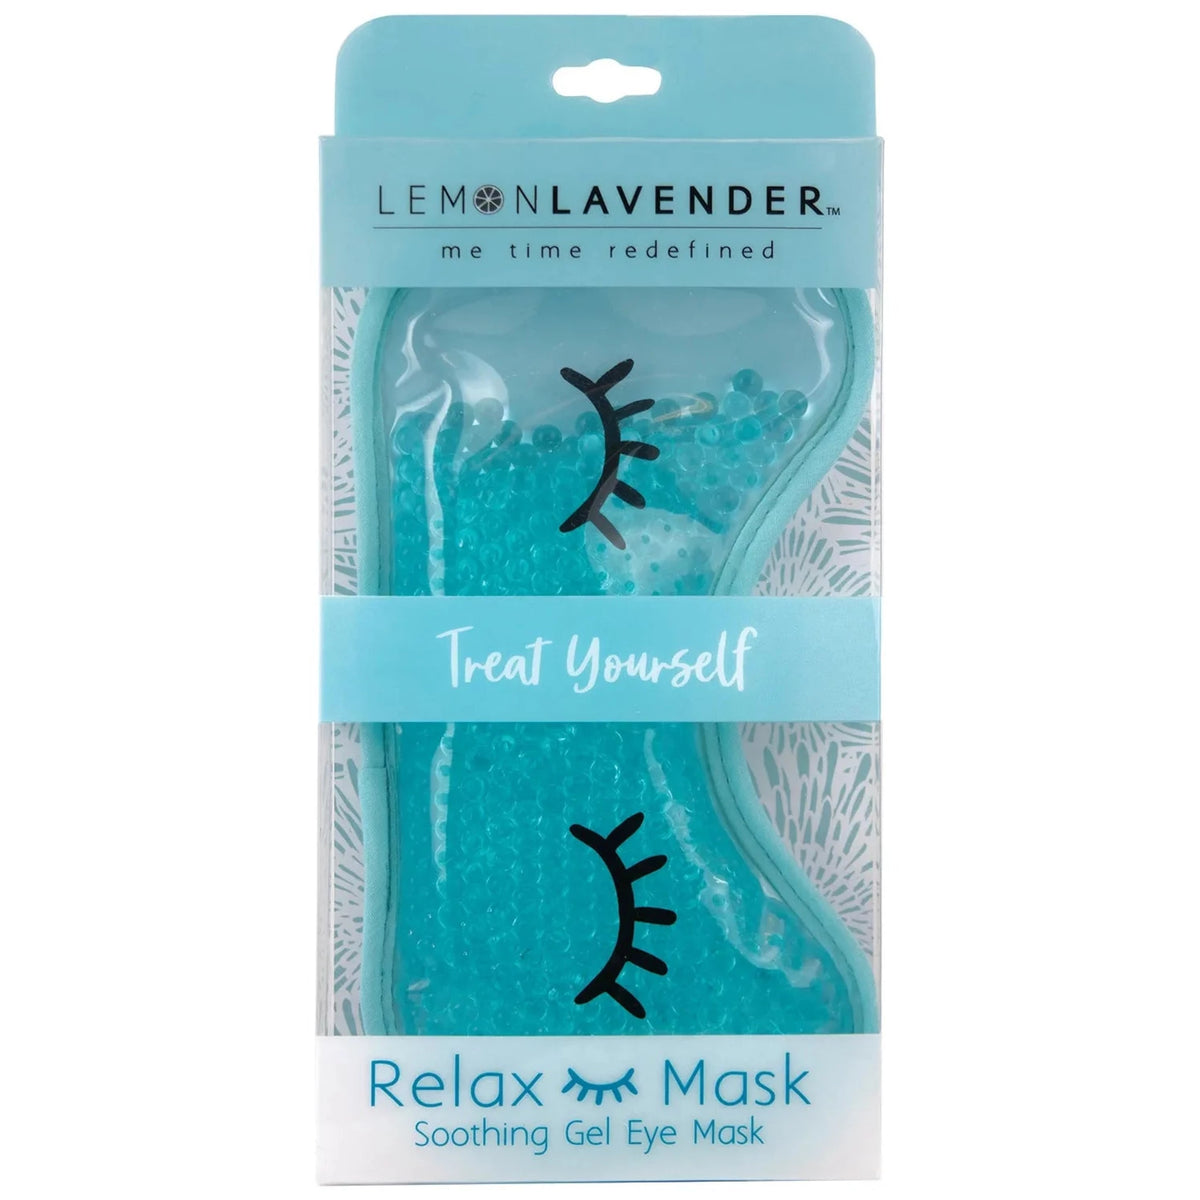 Gel eye mask assortment - gift